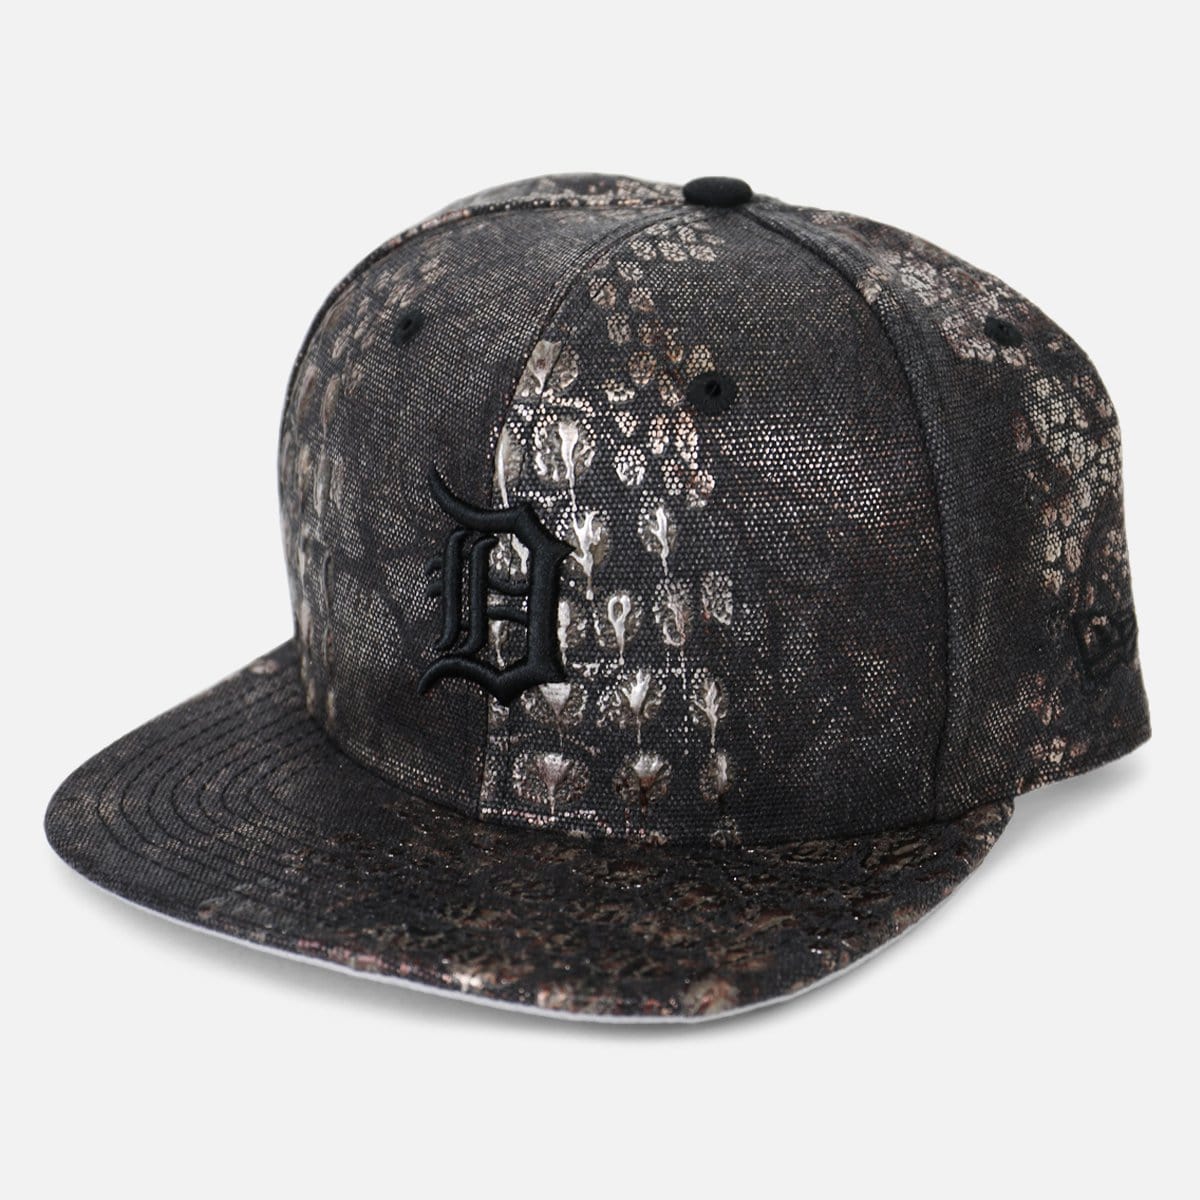 New Era Detroit Tigers Solid Croc Canvas Snapback Hat (Black/Bronze-Copper)